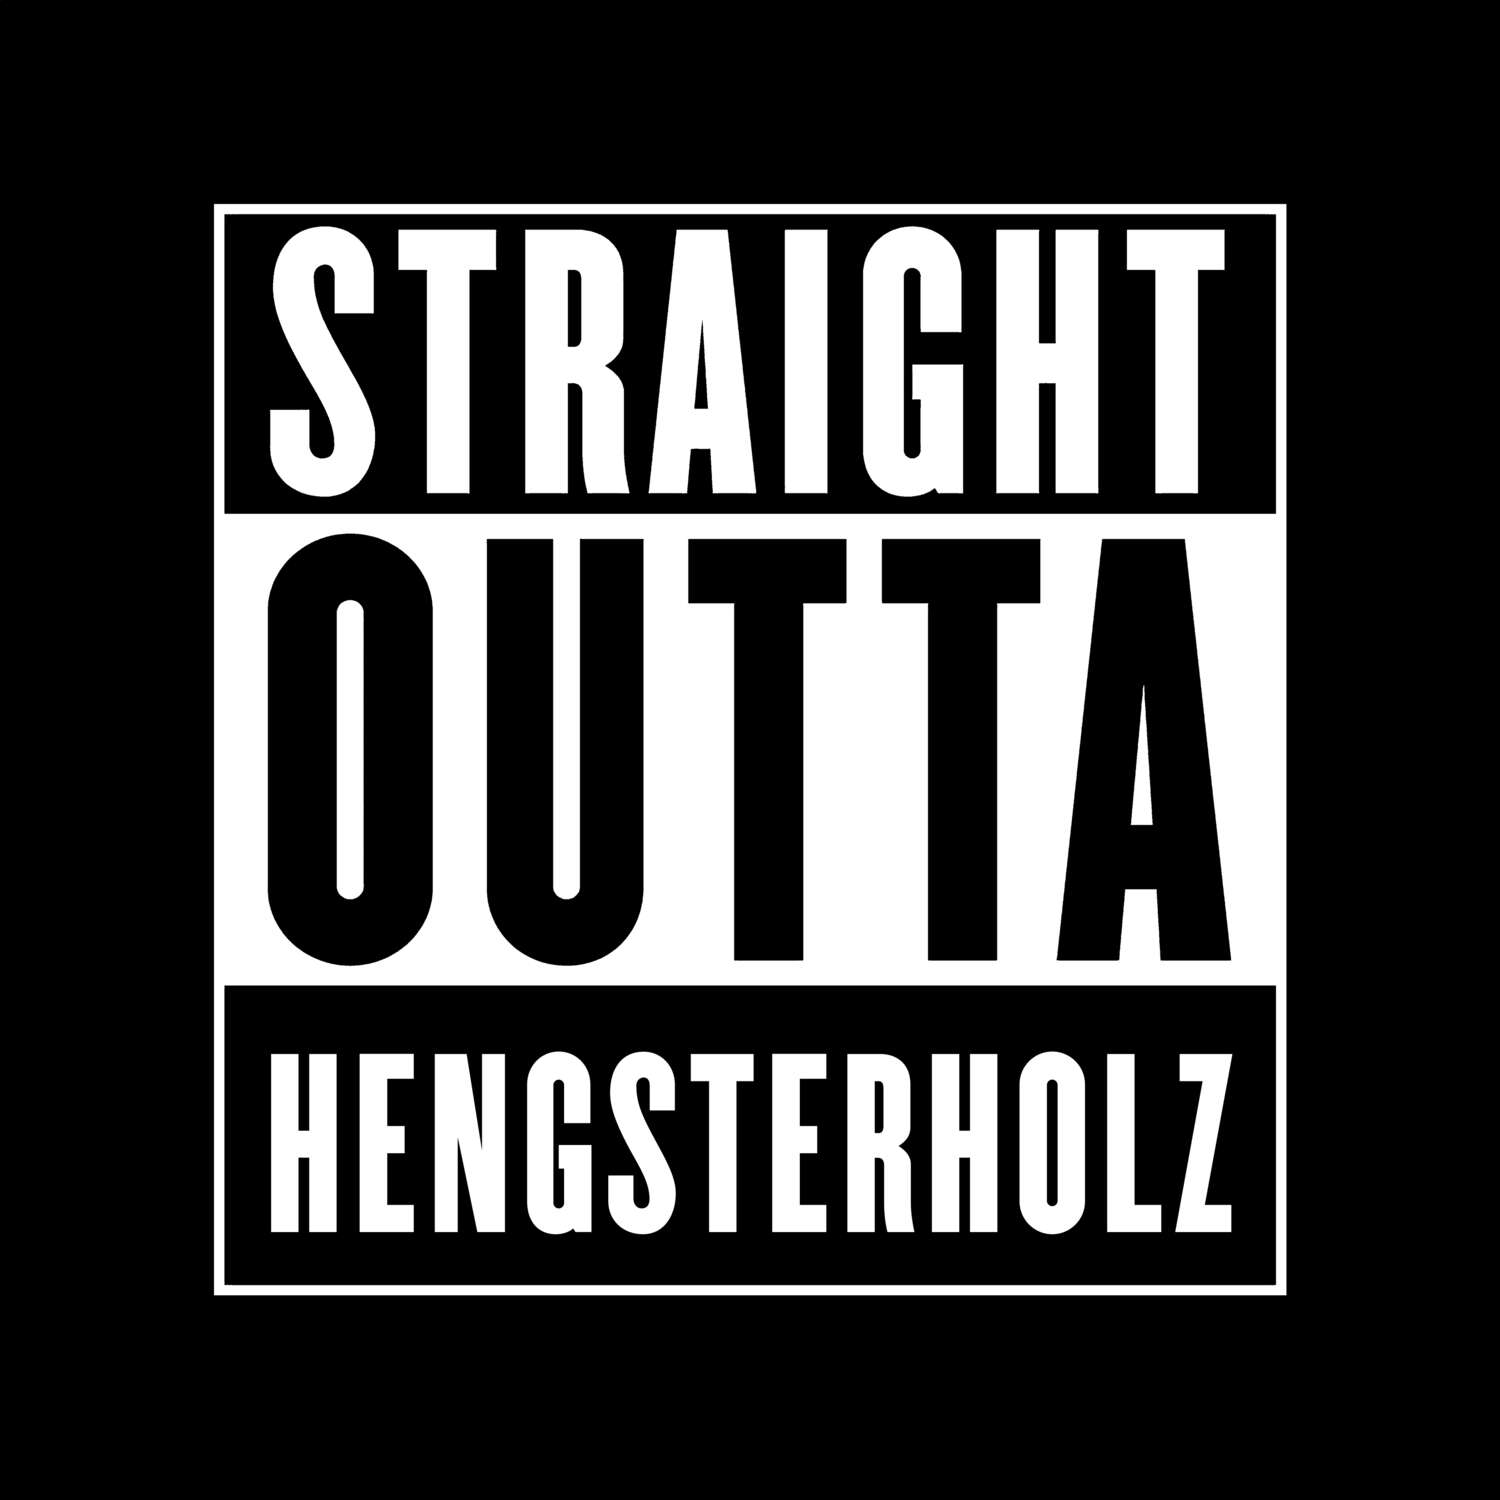 Hengsterholz T-Shirt »Straight Outta«